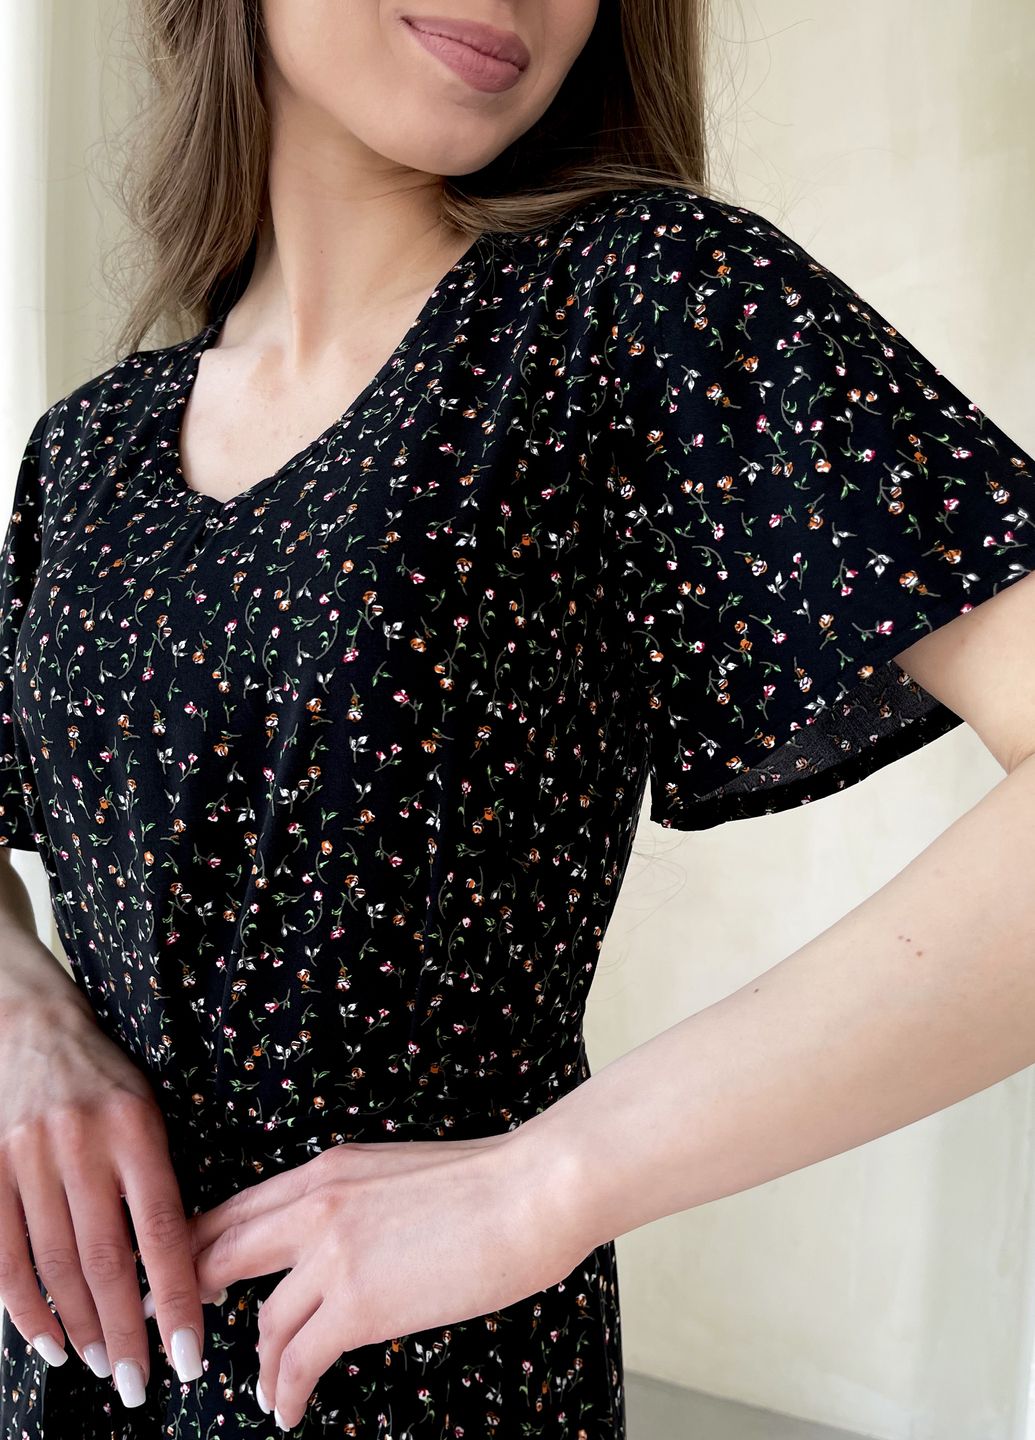 Купить Женское платье до колена с цветочным принтом и пояском черное Merlini Маренго 700000241, размер 42-44 (S-M) в интернет-магазине